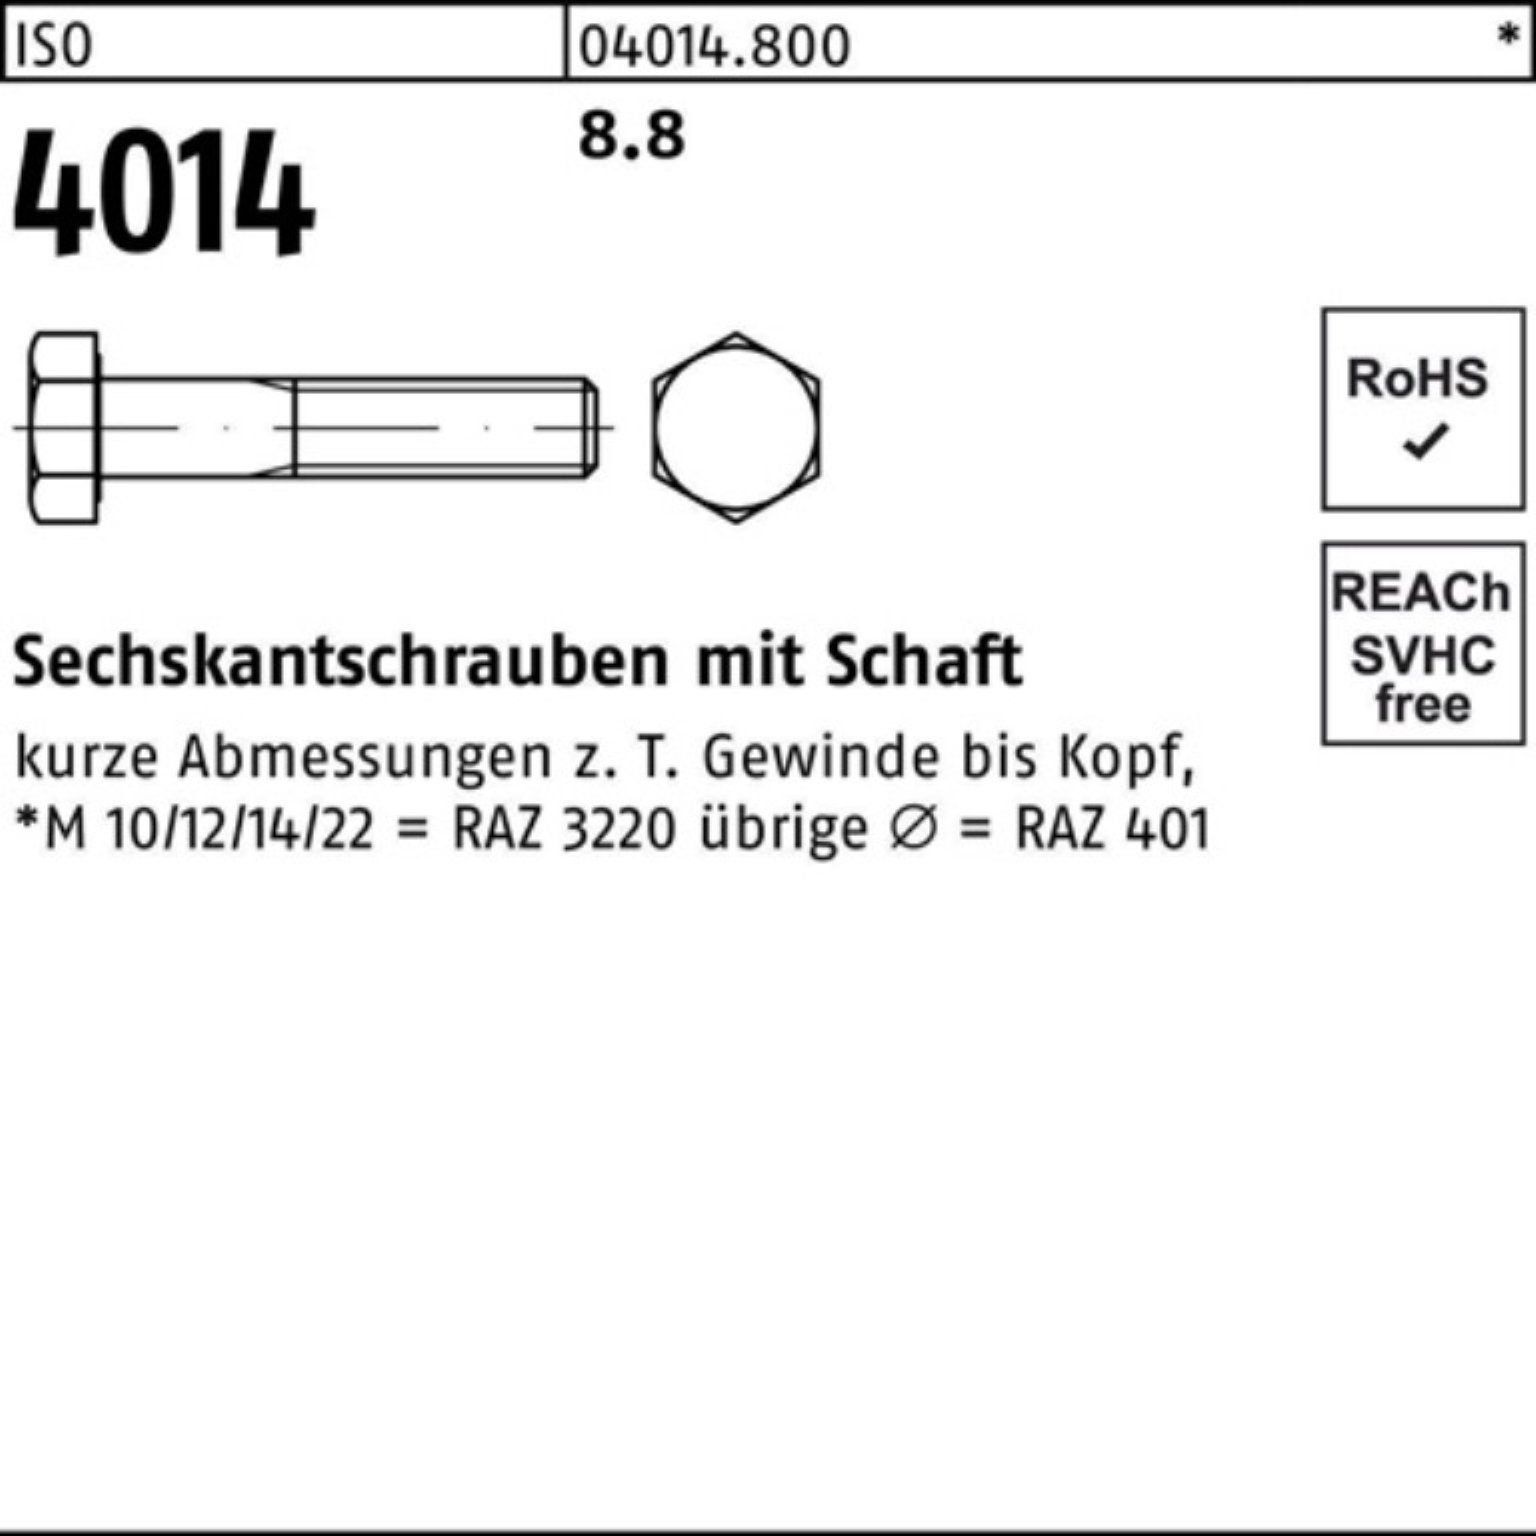 Bufab Sechskantschraube 100er Pack Sechskantschraube 1 ISO ISO 130 M36x 4014 Schaft 8.8 Stück